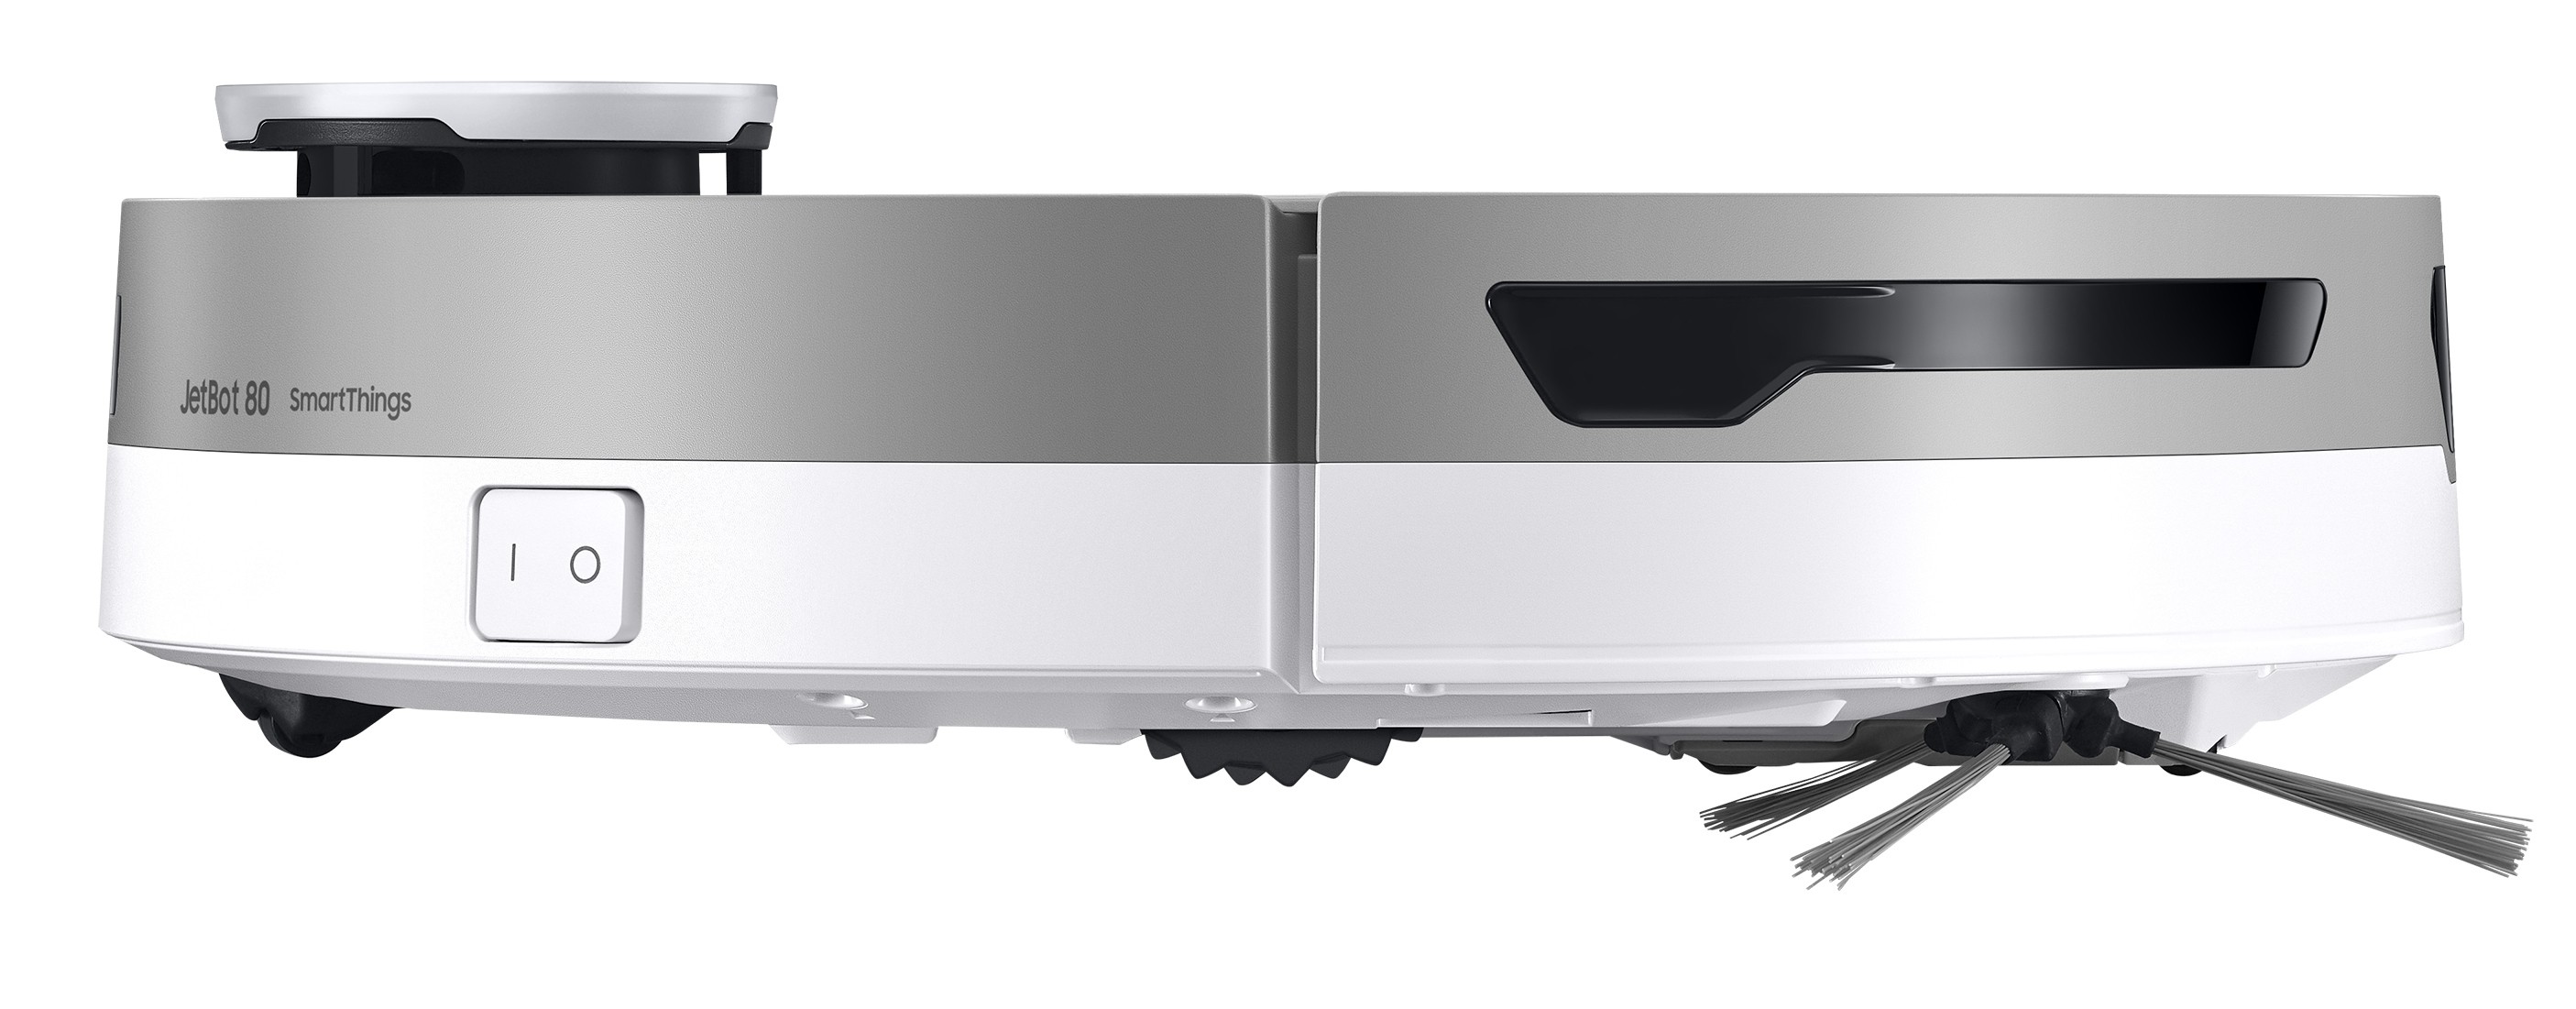 Робот-пылесос Samsung VR30T85513W/EV отзывы - изображения 5